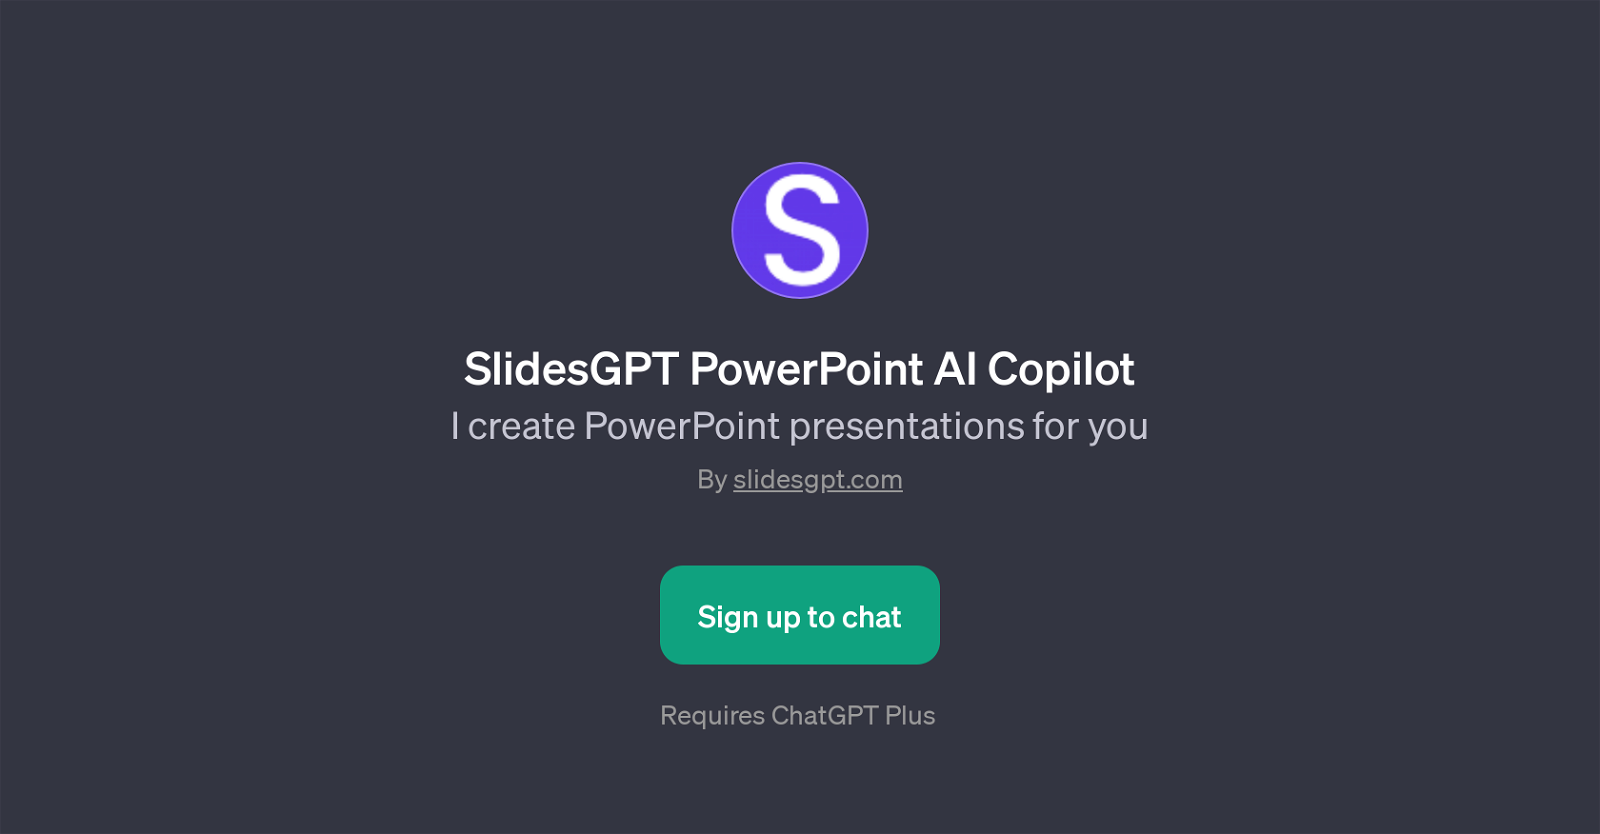 SlidesGPT PowerPoint AI Copilot website